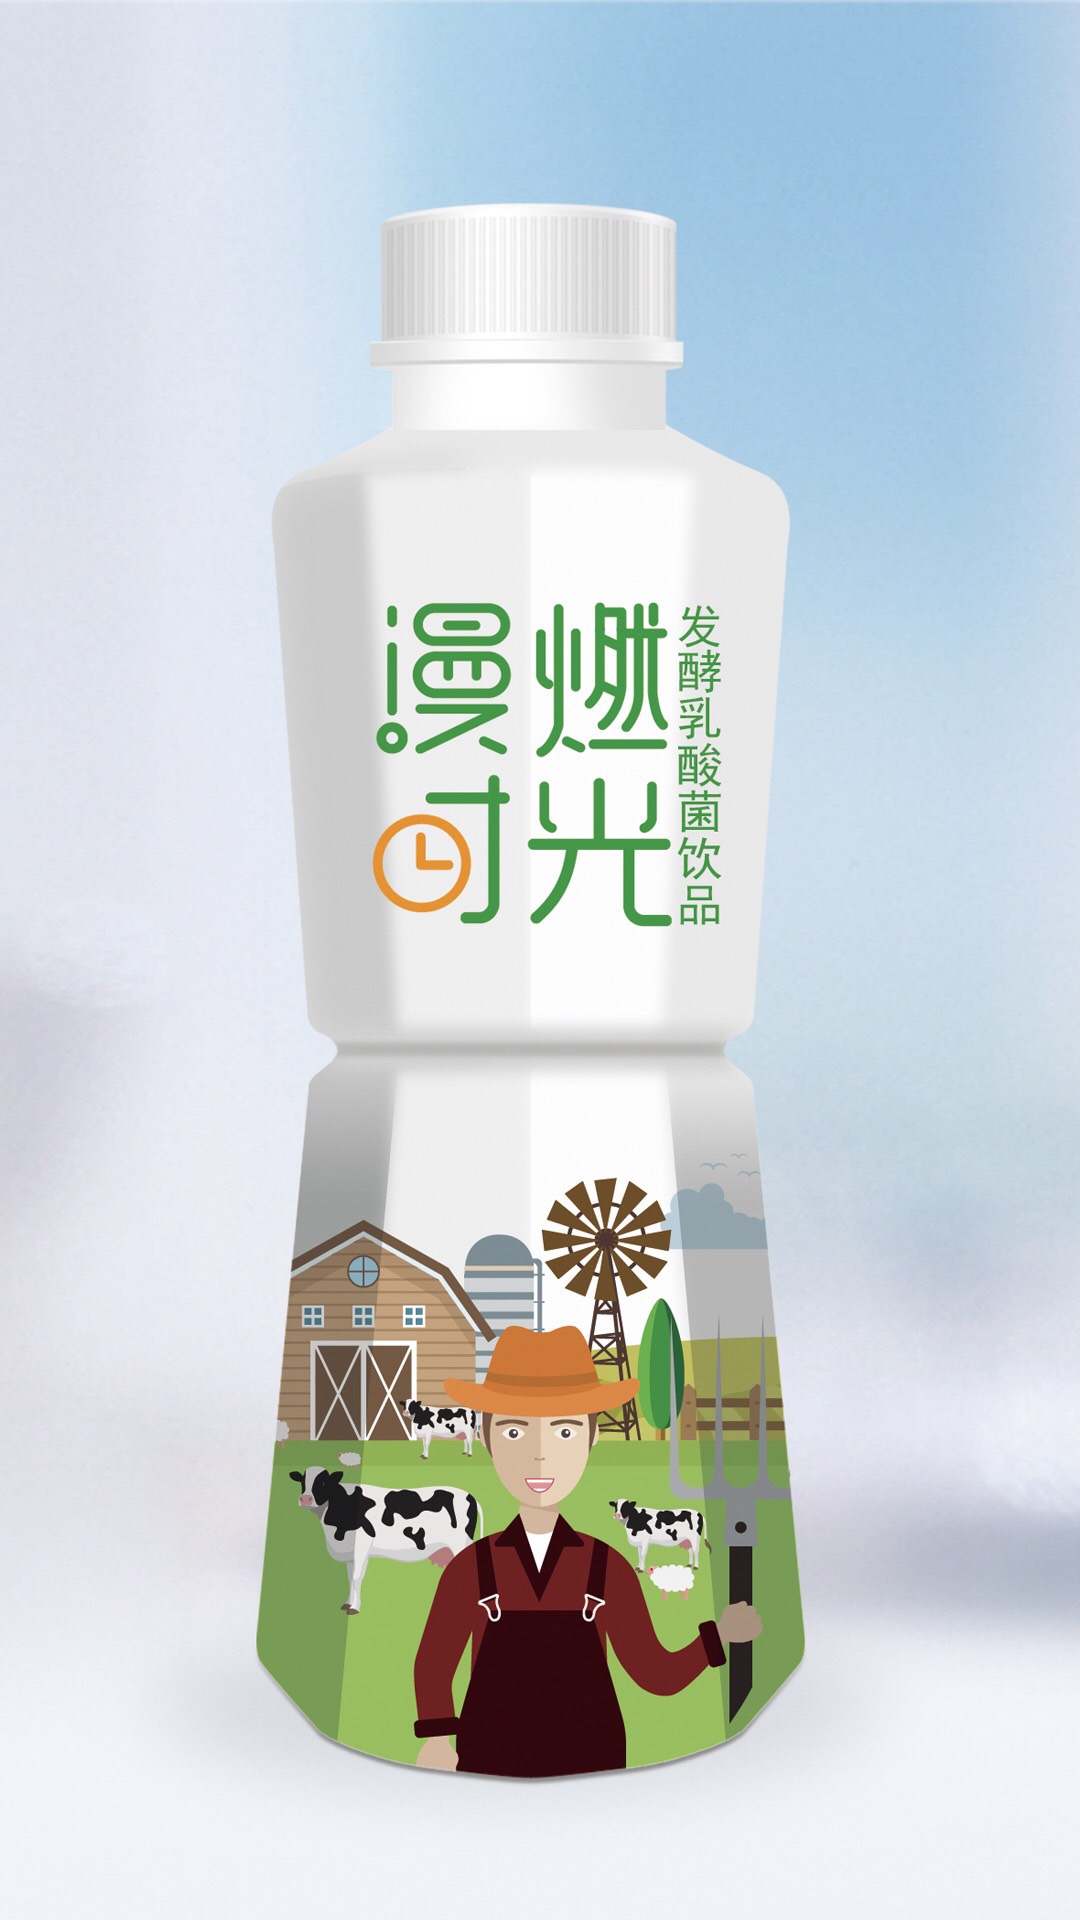 北京酸奶包装设计